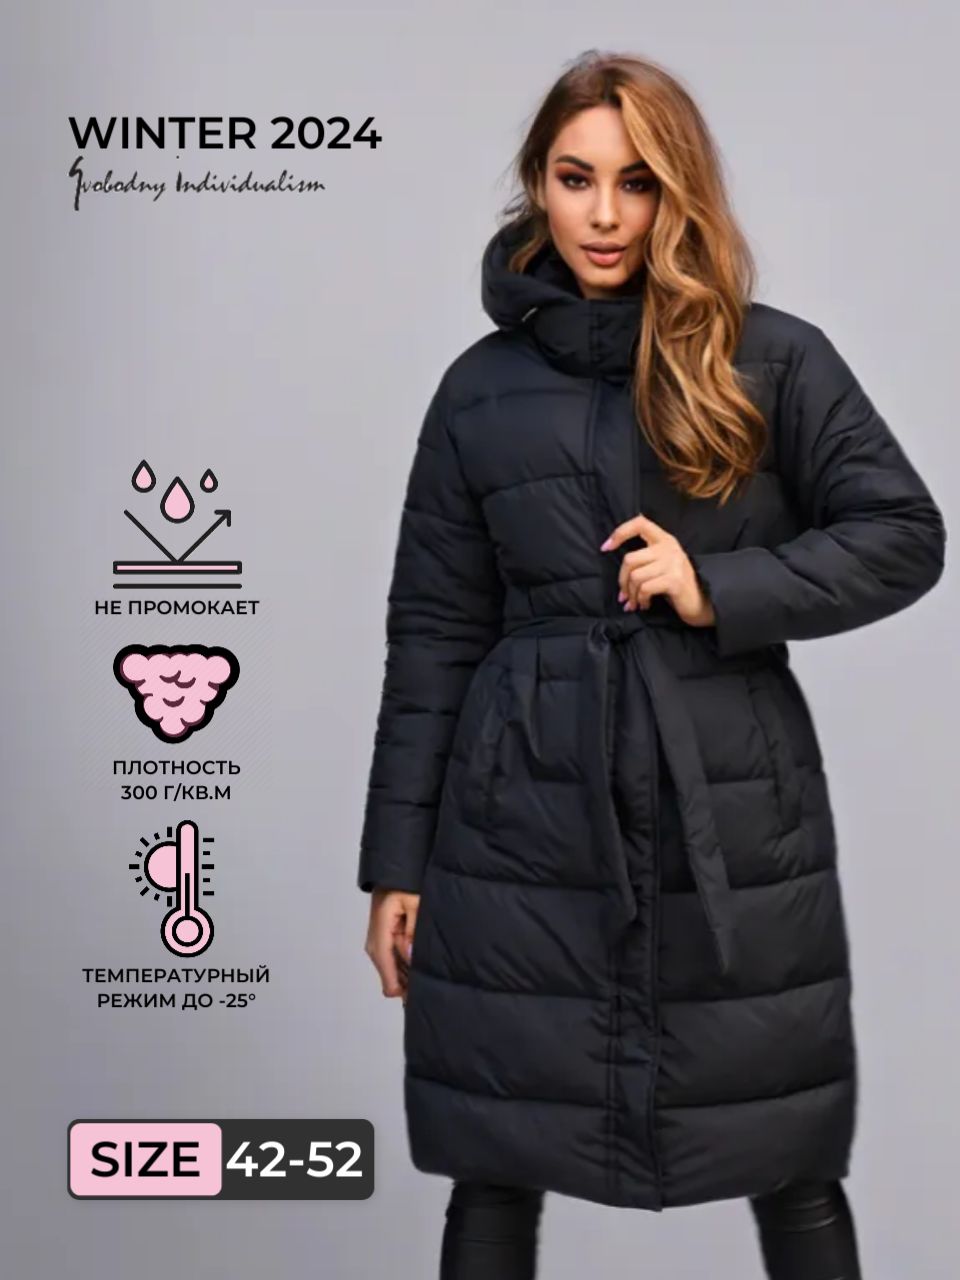 Пальто женское Svobodny Individualism P702 черное 44 RU